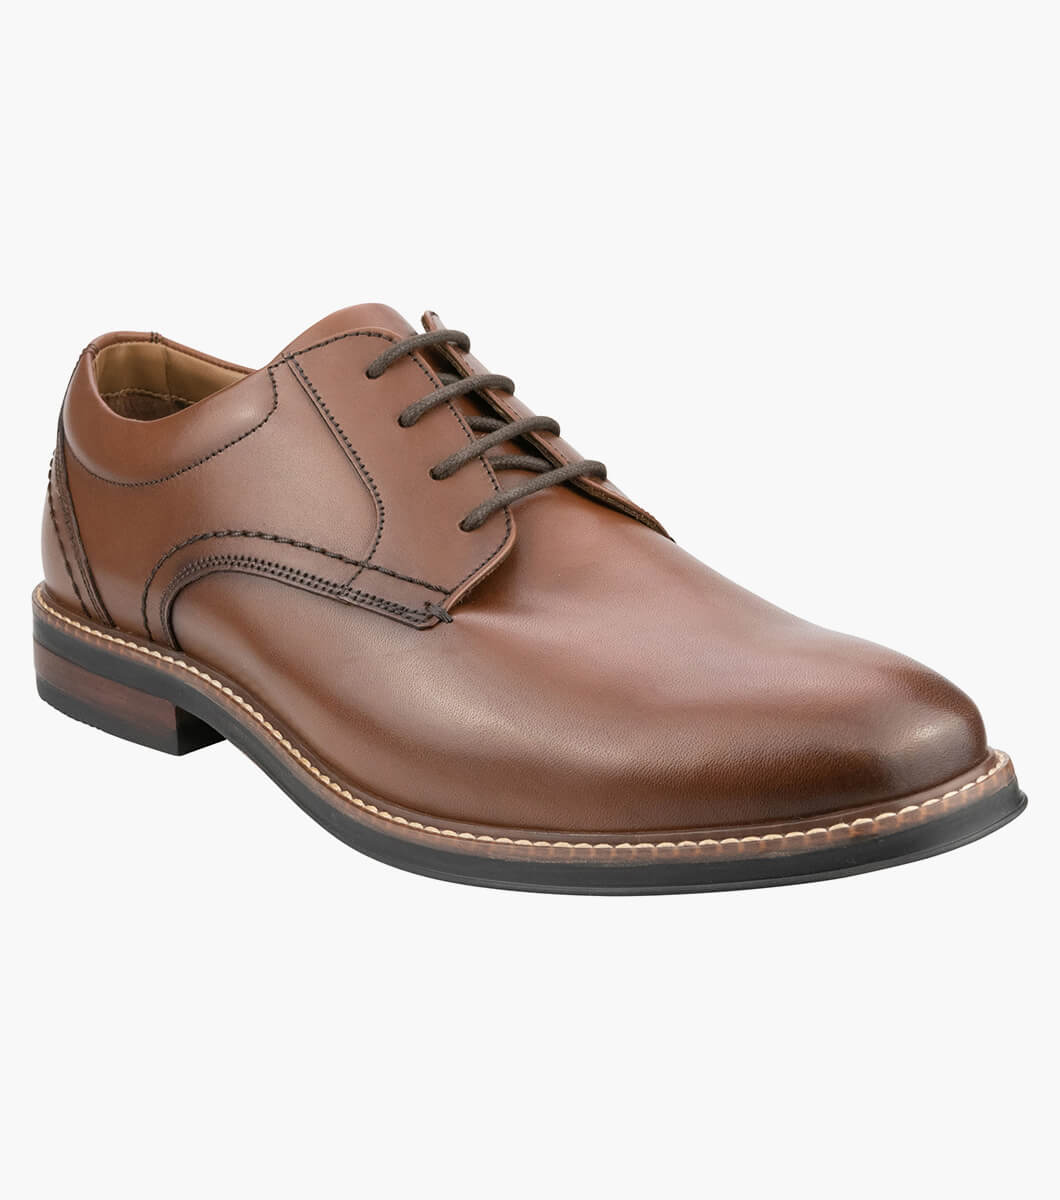 Calderone Plain Plain Toe Derby Men’s Dress Shoes | Florsheim.com